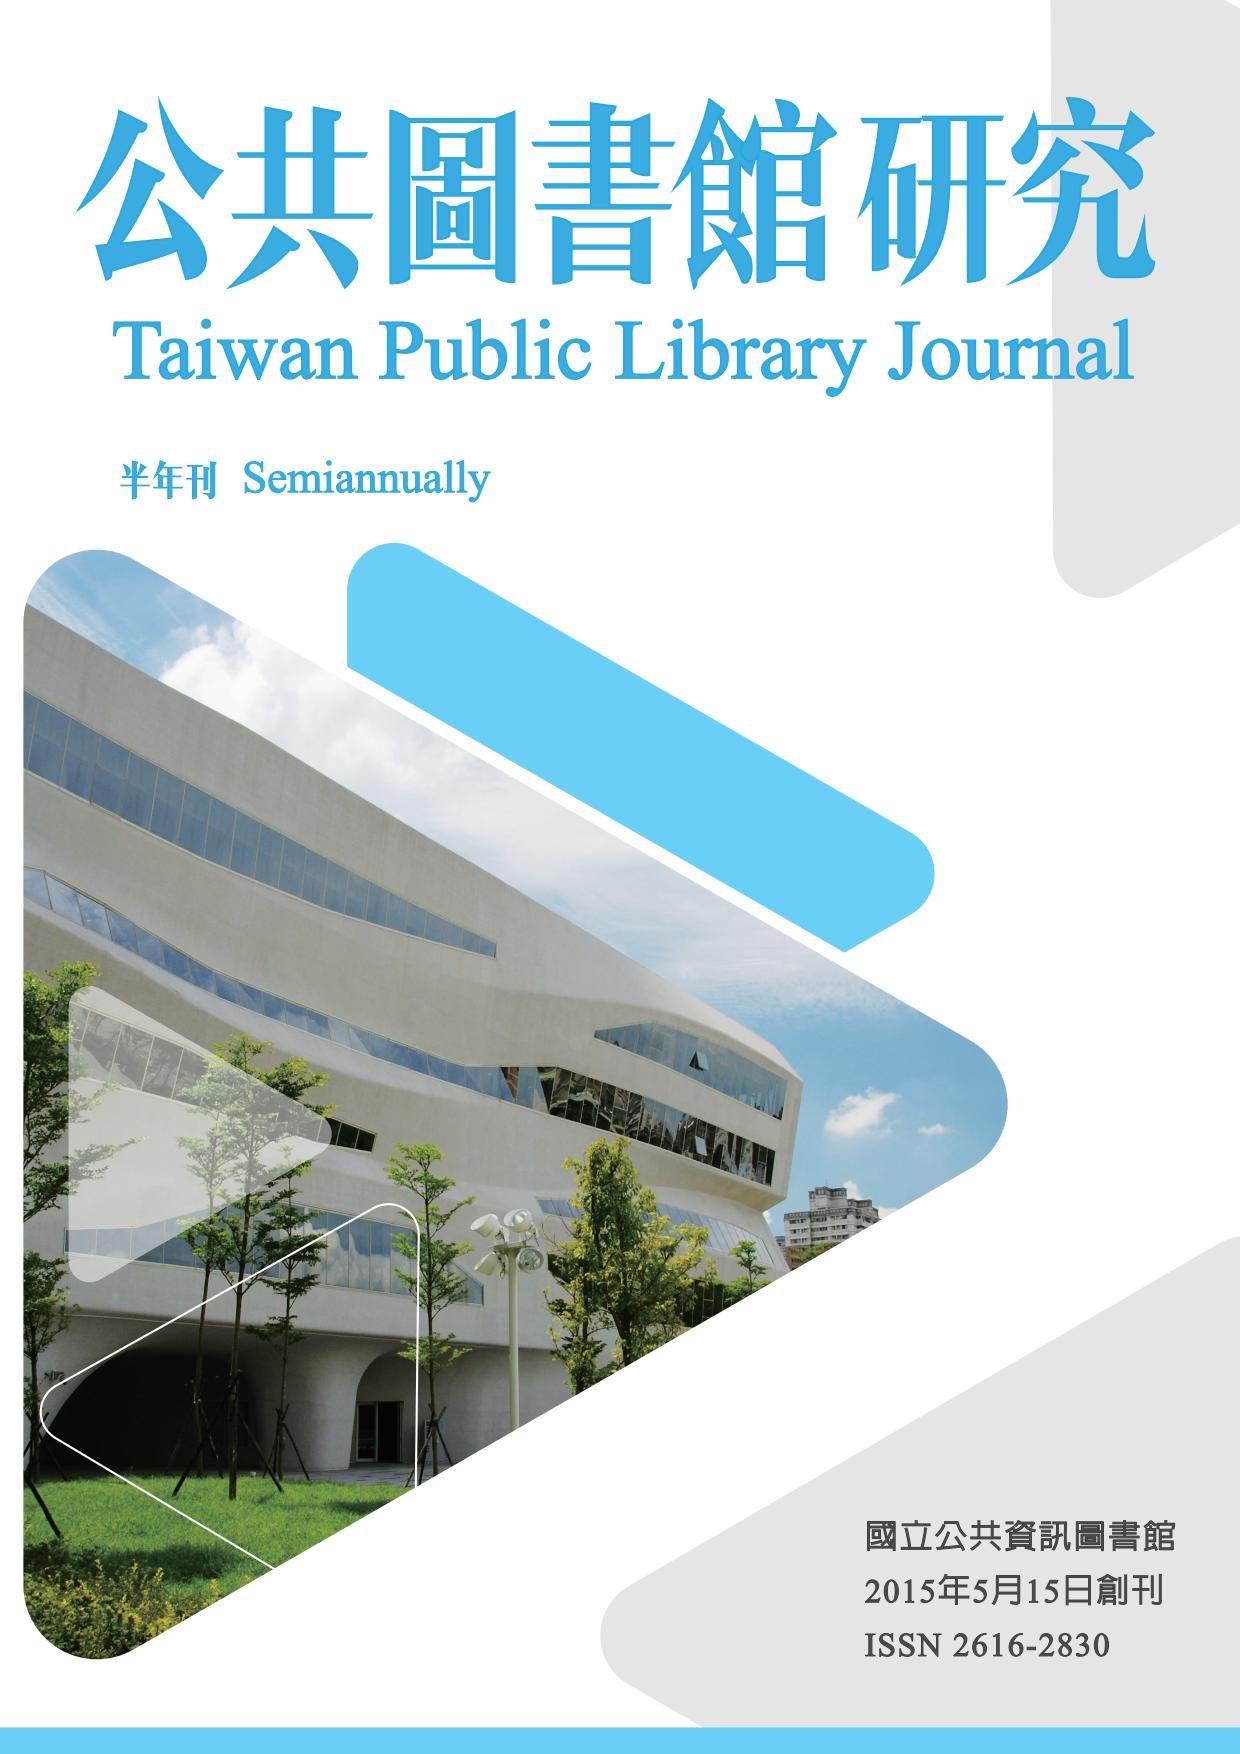 《公共圖書館研究》第7期(2018.05.15)全文